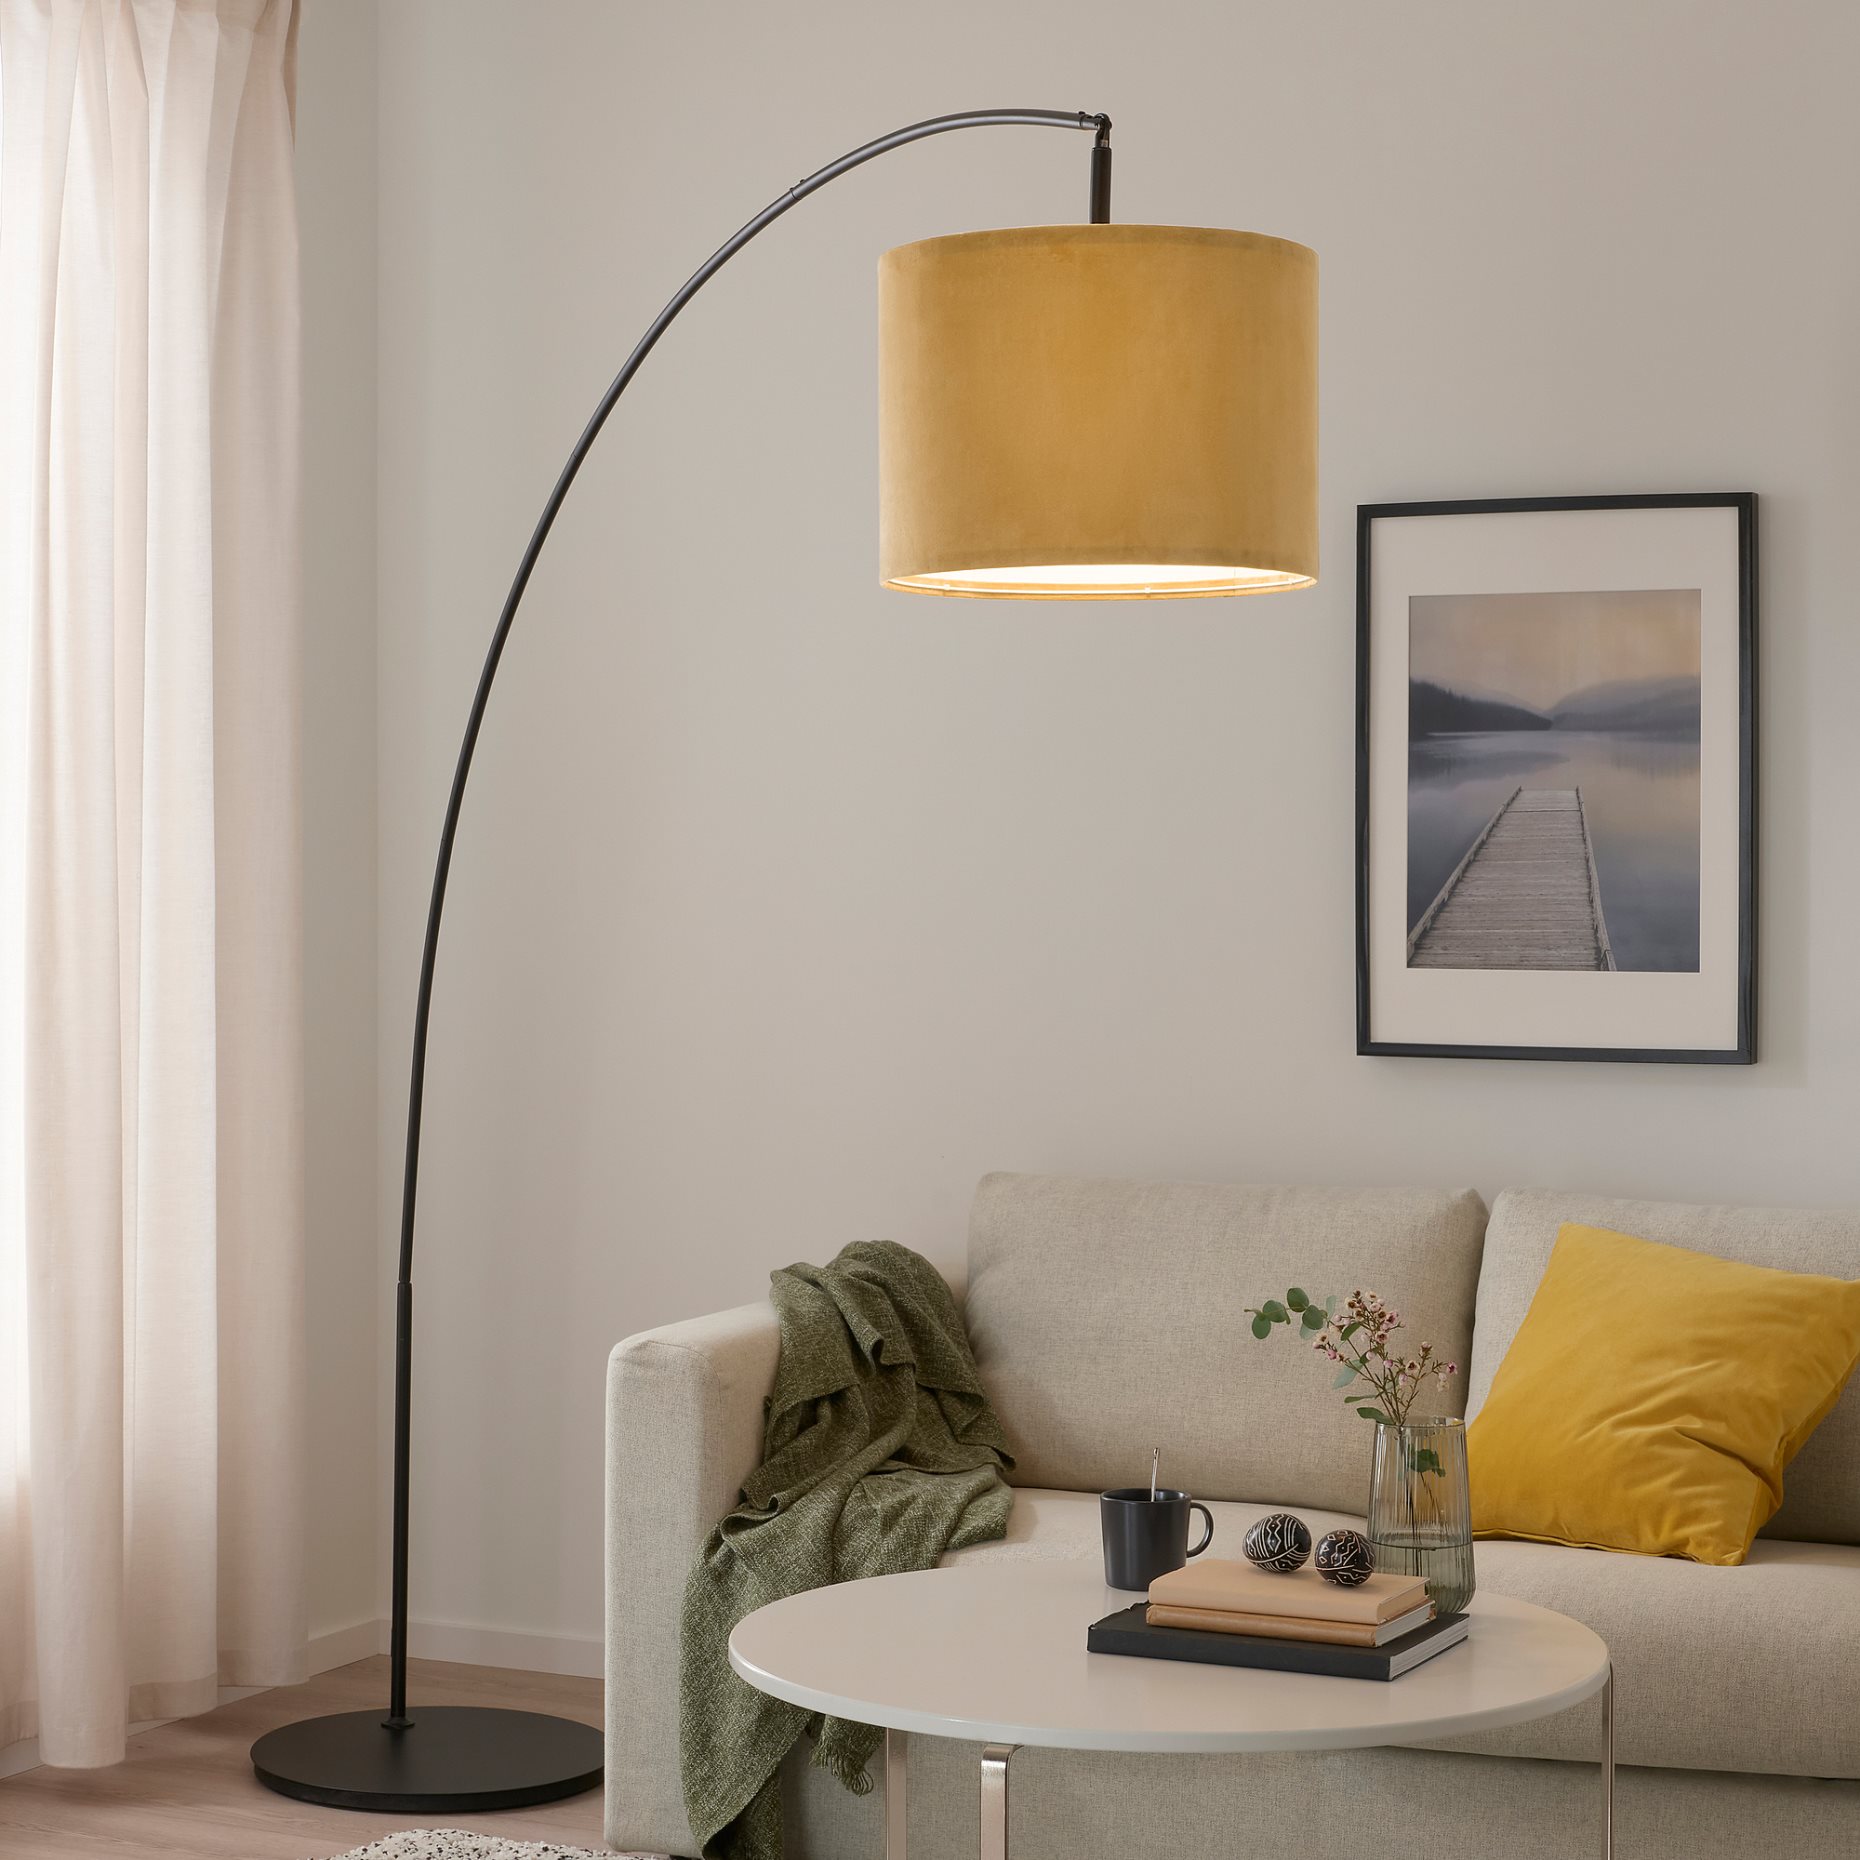 MOLNSKIKT, lamp shade/velvet, 42 cm, 305.145.12